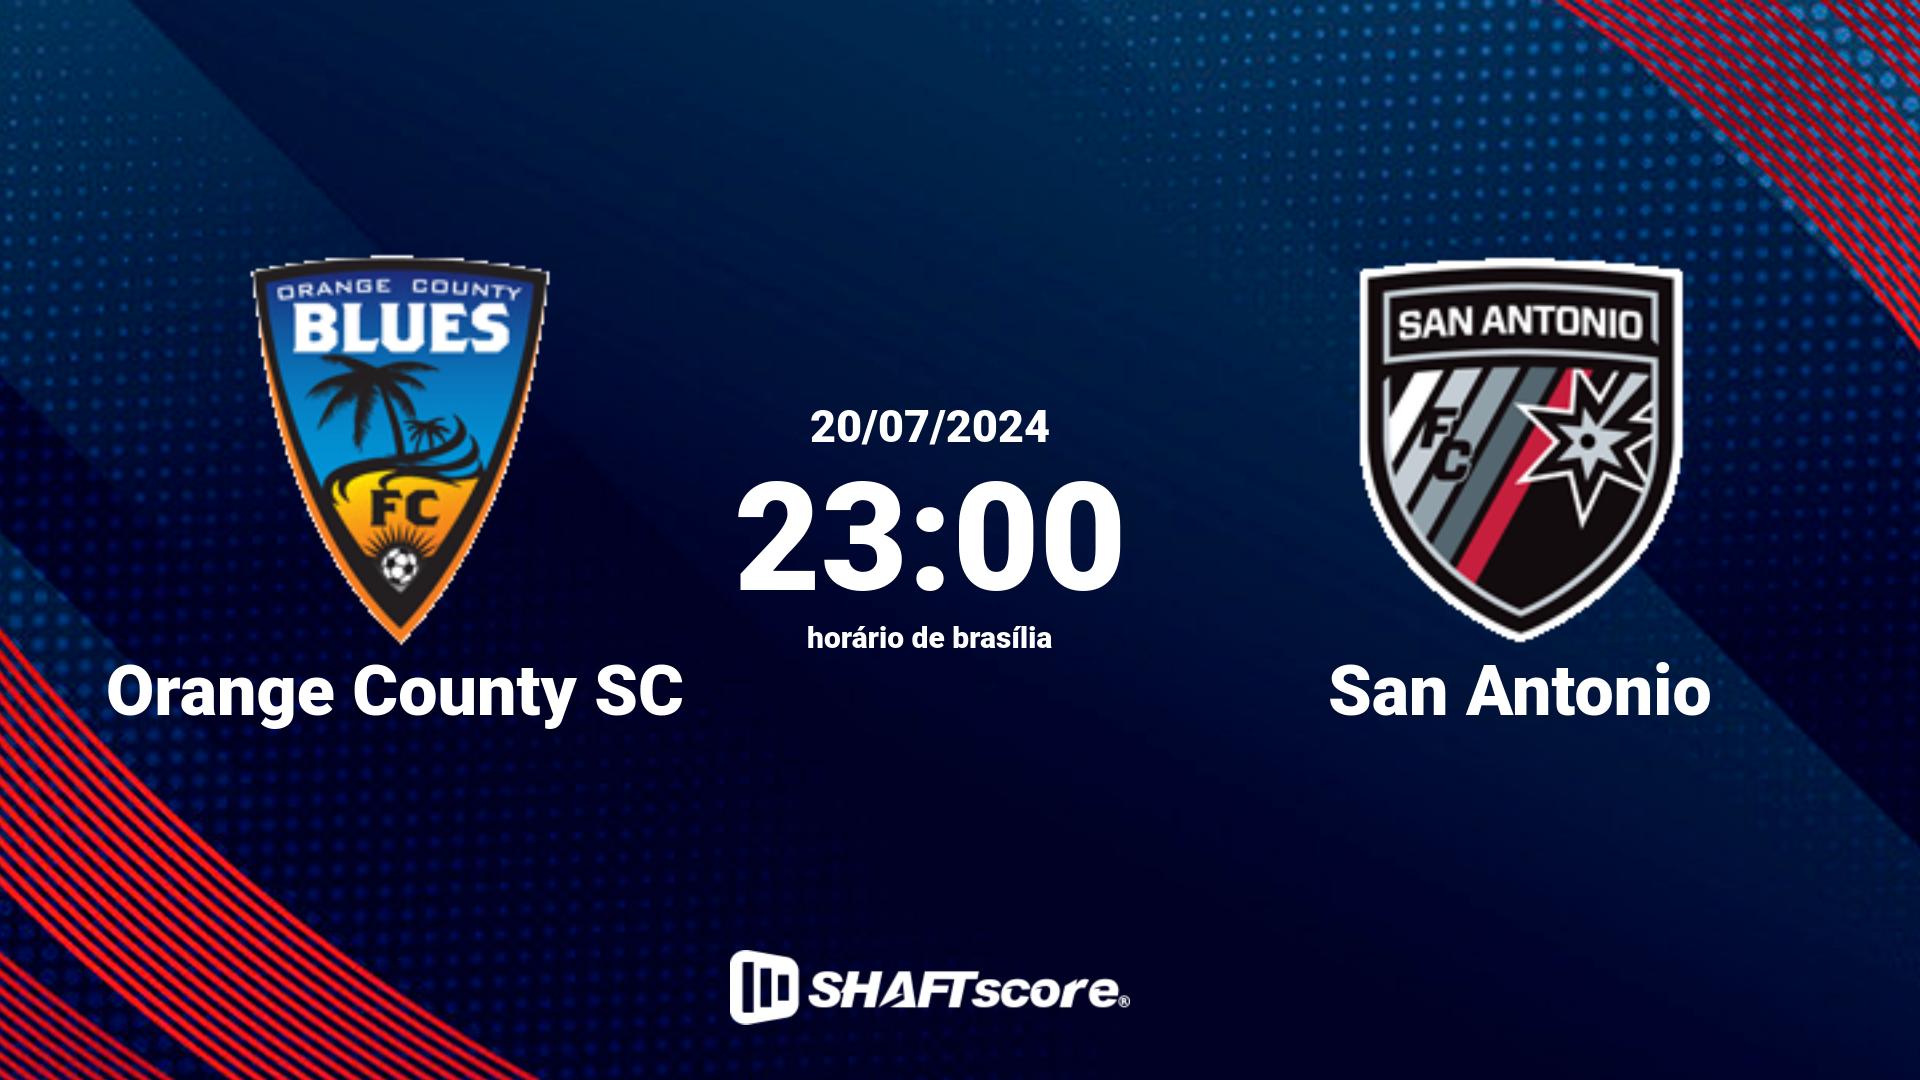 Estatísticas do jogo Orange County SC vs San Antonio 20.07 23:00